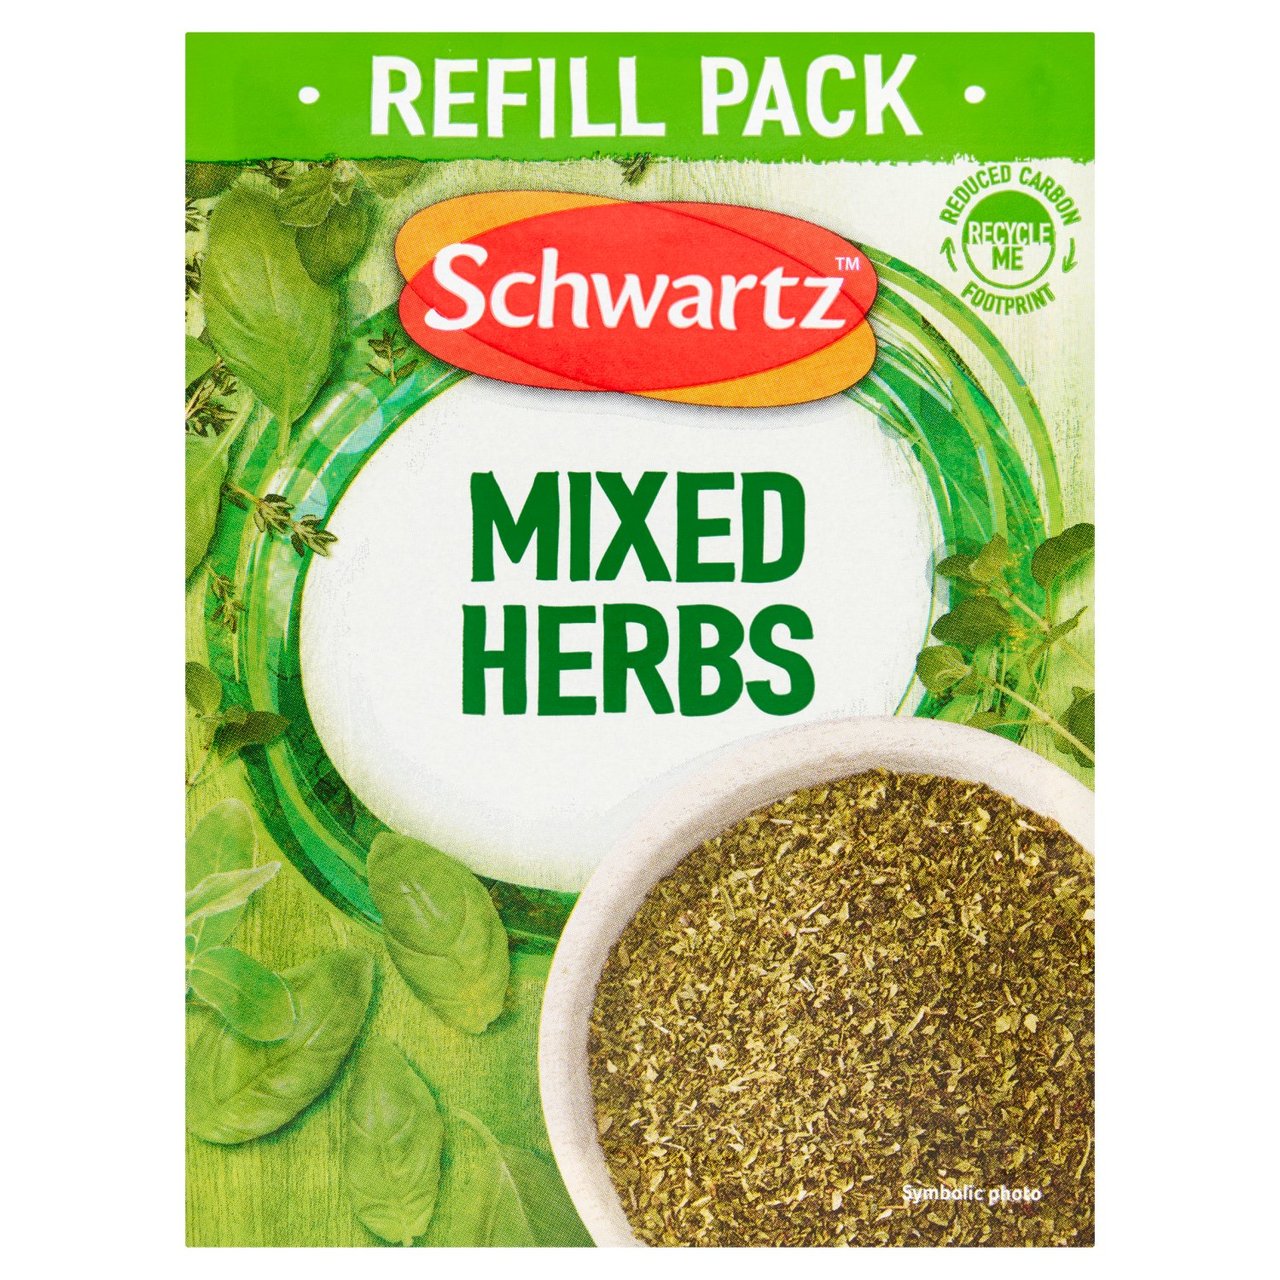 Schwartz Mixed Herbs Refill Pack